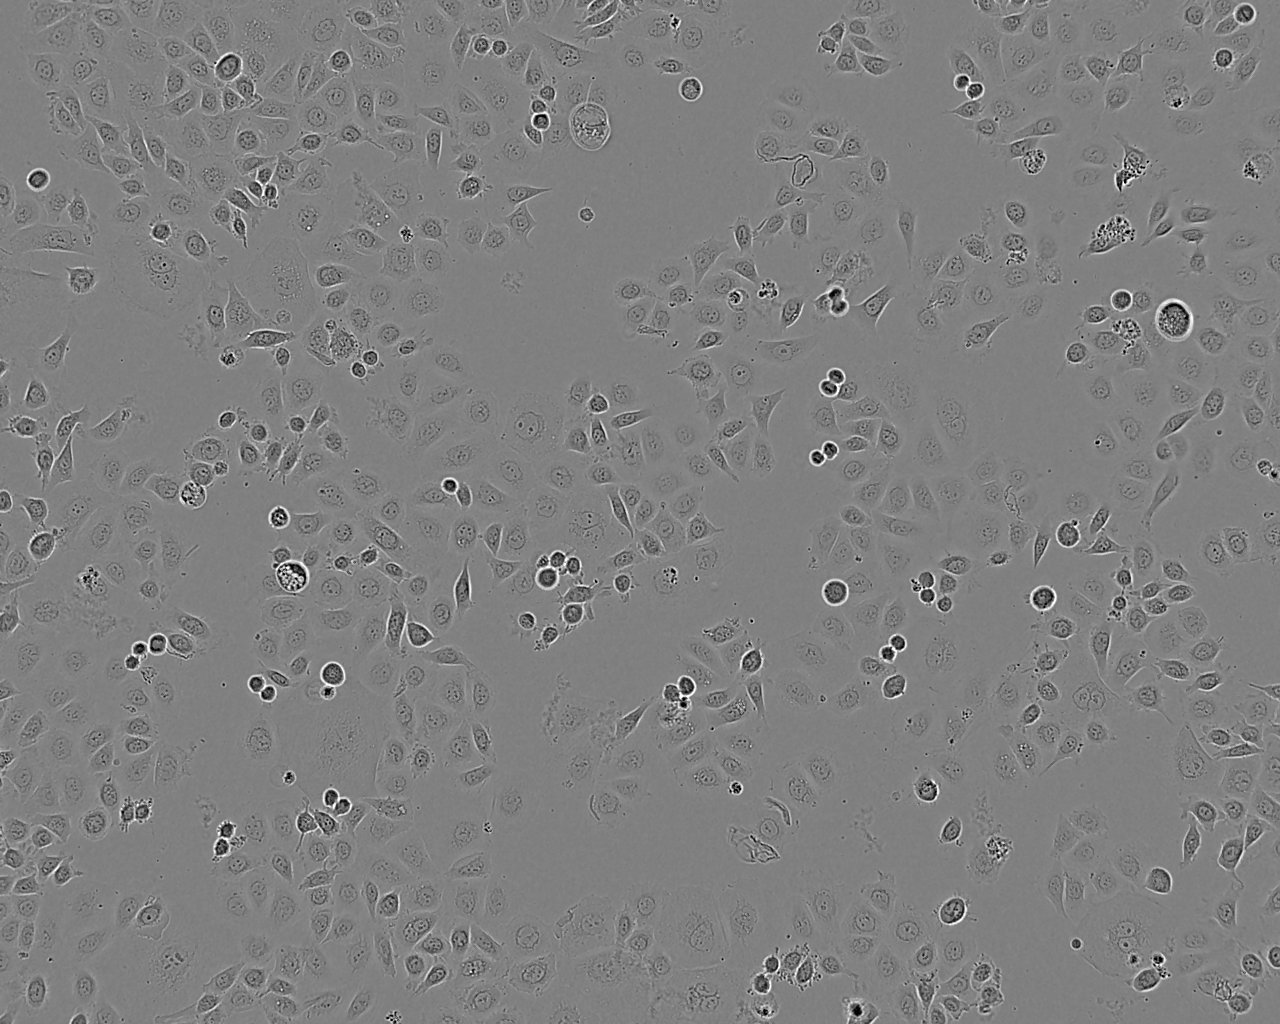 PA317细胞：逆转录病毒包被的NIH3T3细胞系,PA317